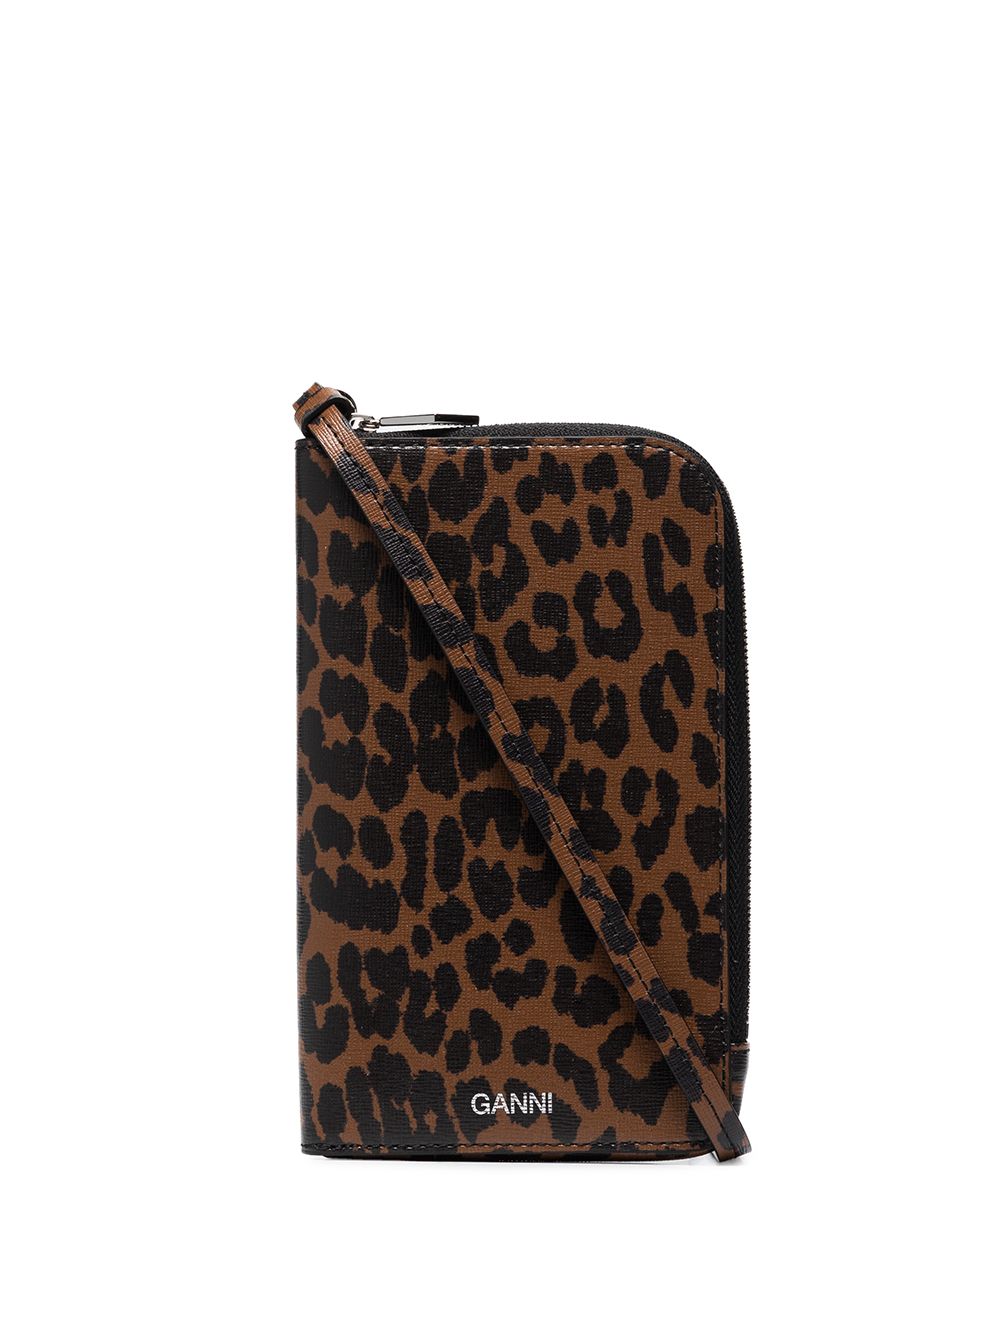 фото Ganni сумка через плечо с леопардовым принтом